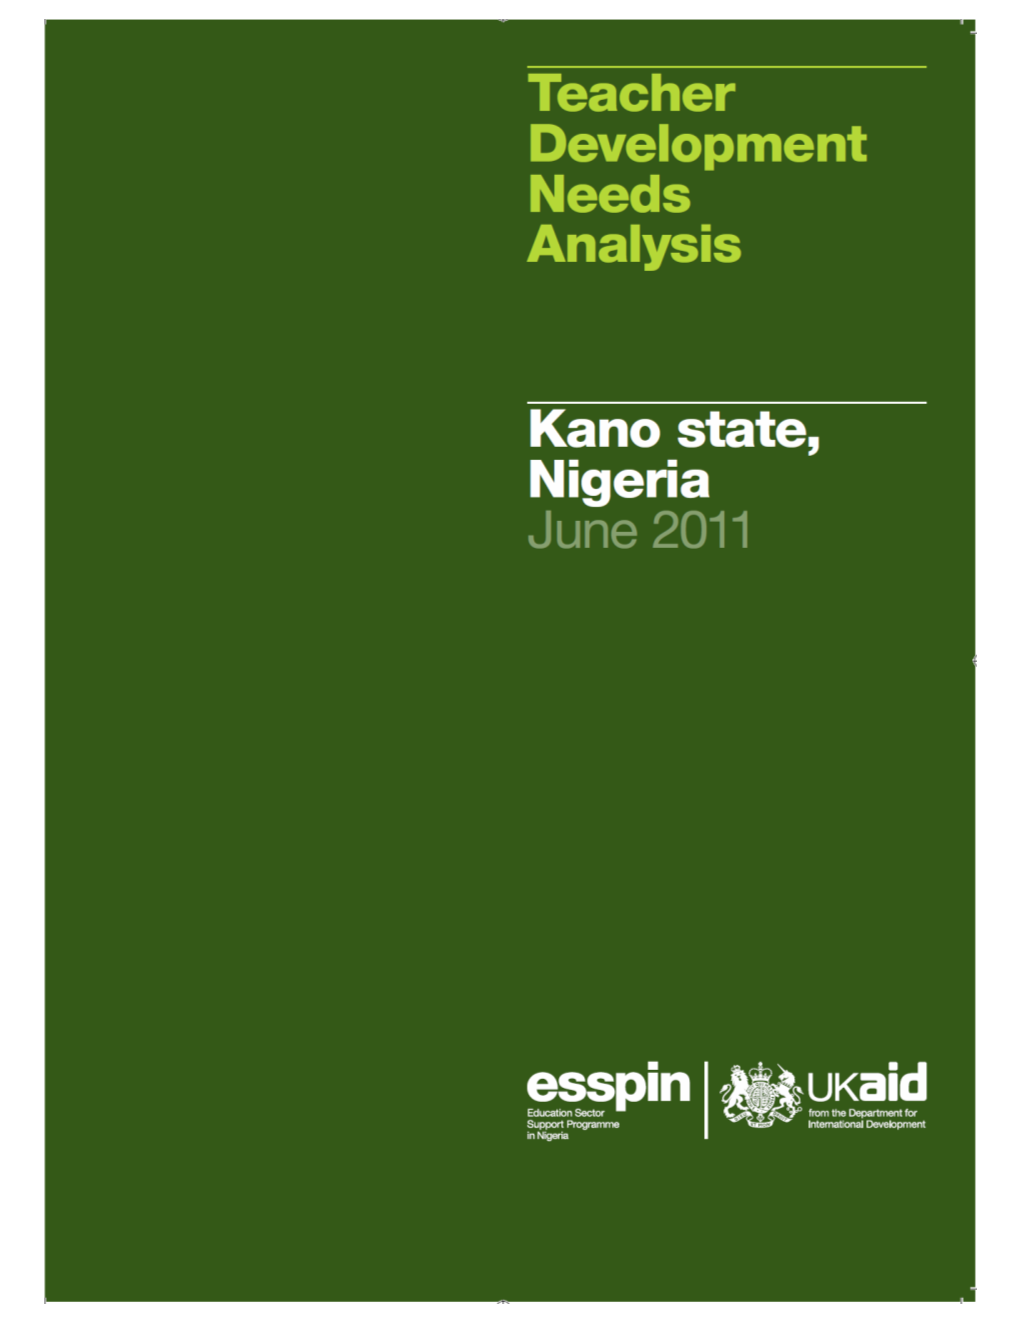 Kano Teachers Development Needs Analysis Report June 2011